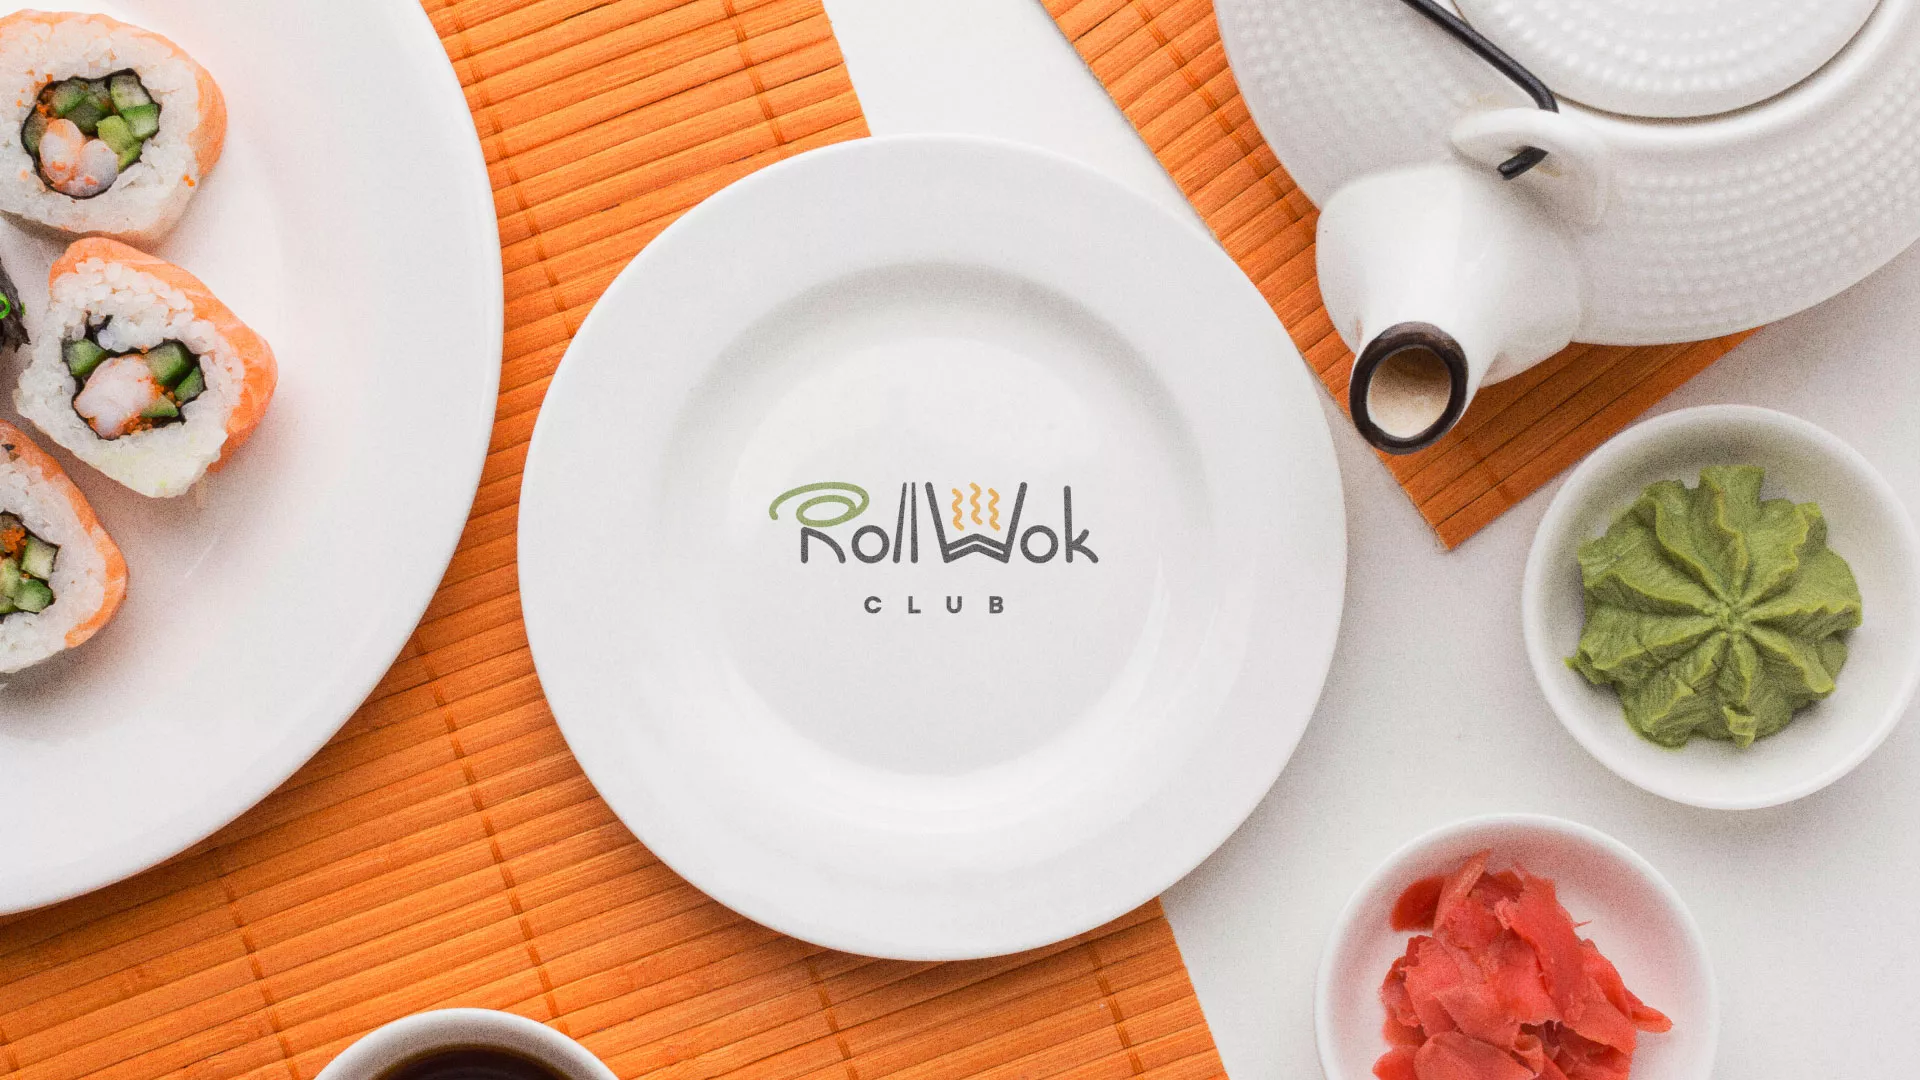 Разработка логотипа и фирменного стиля суши-бара «Roll Wok Club» в Мамадыше